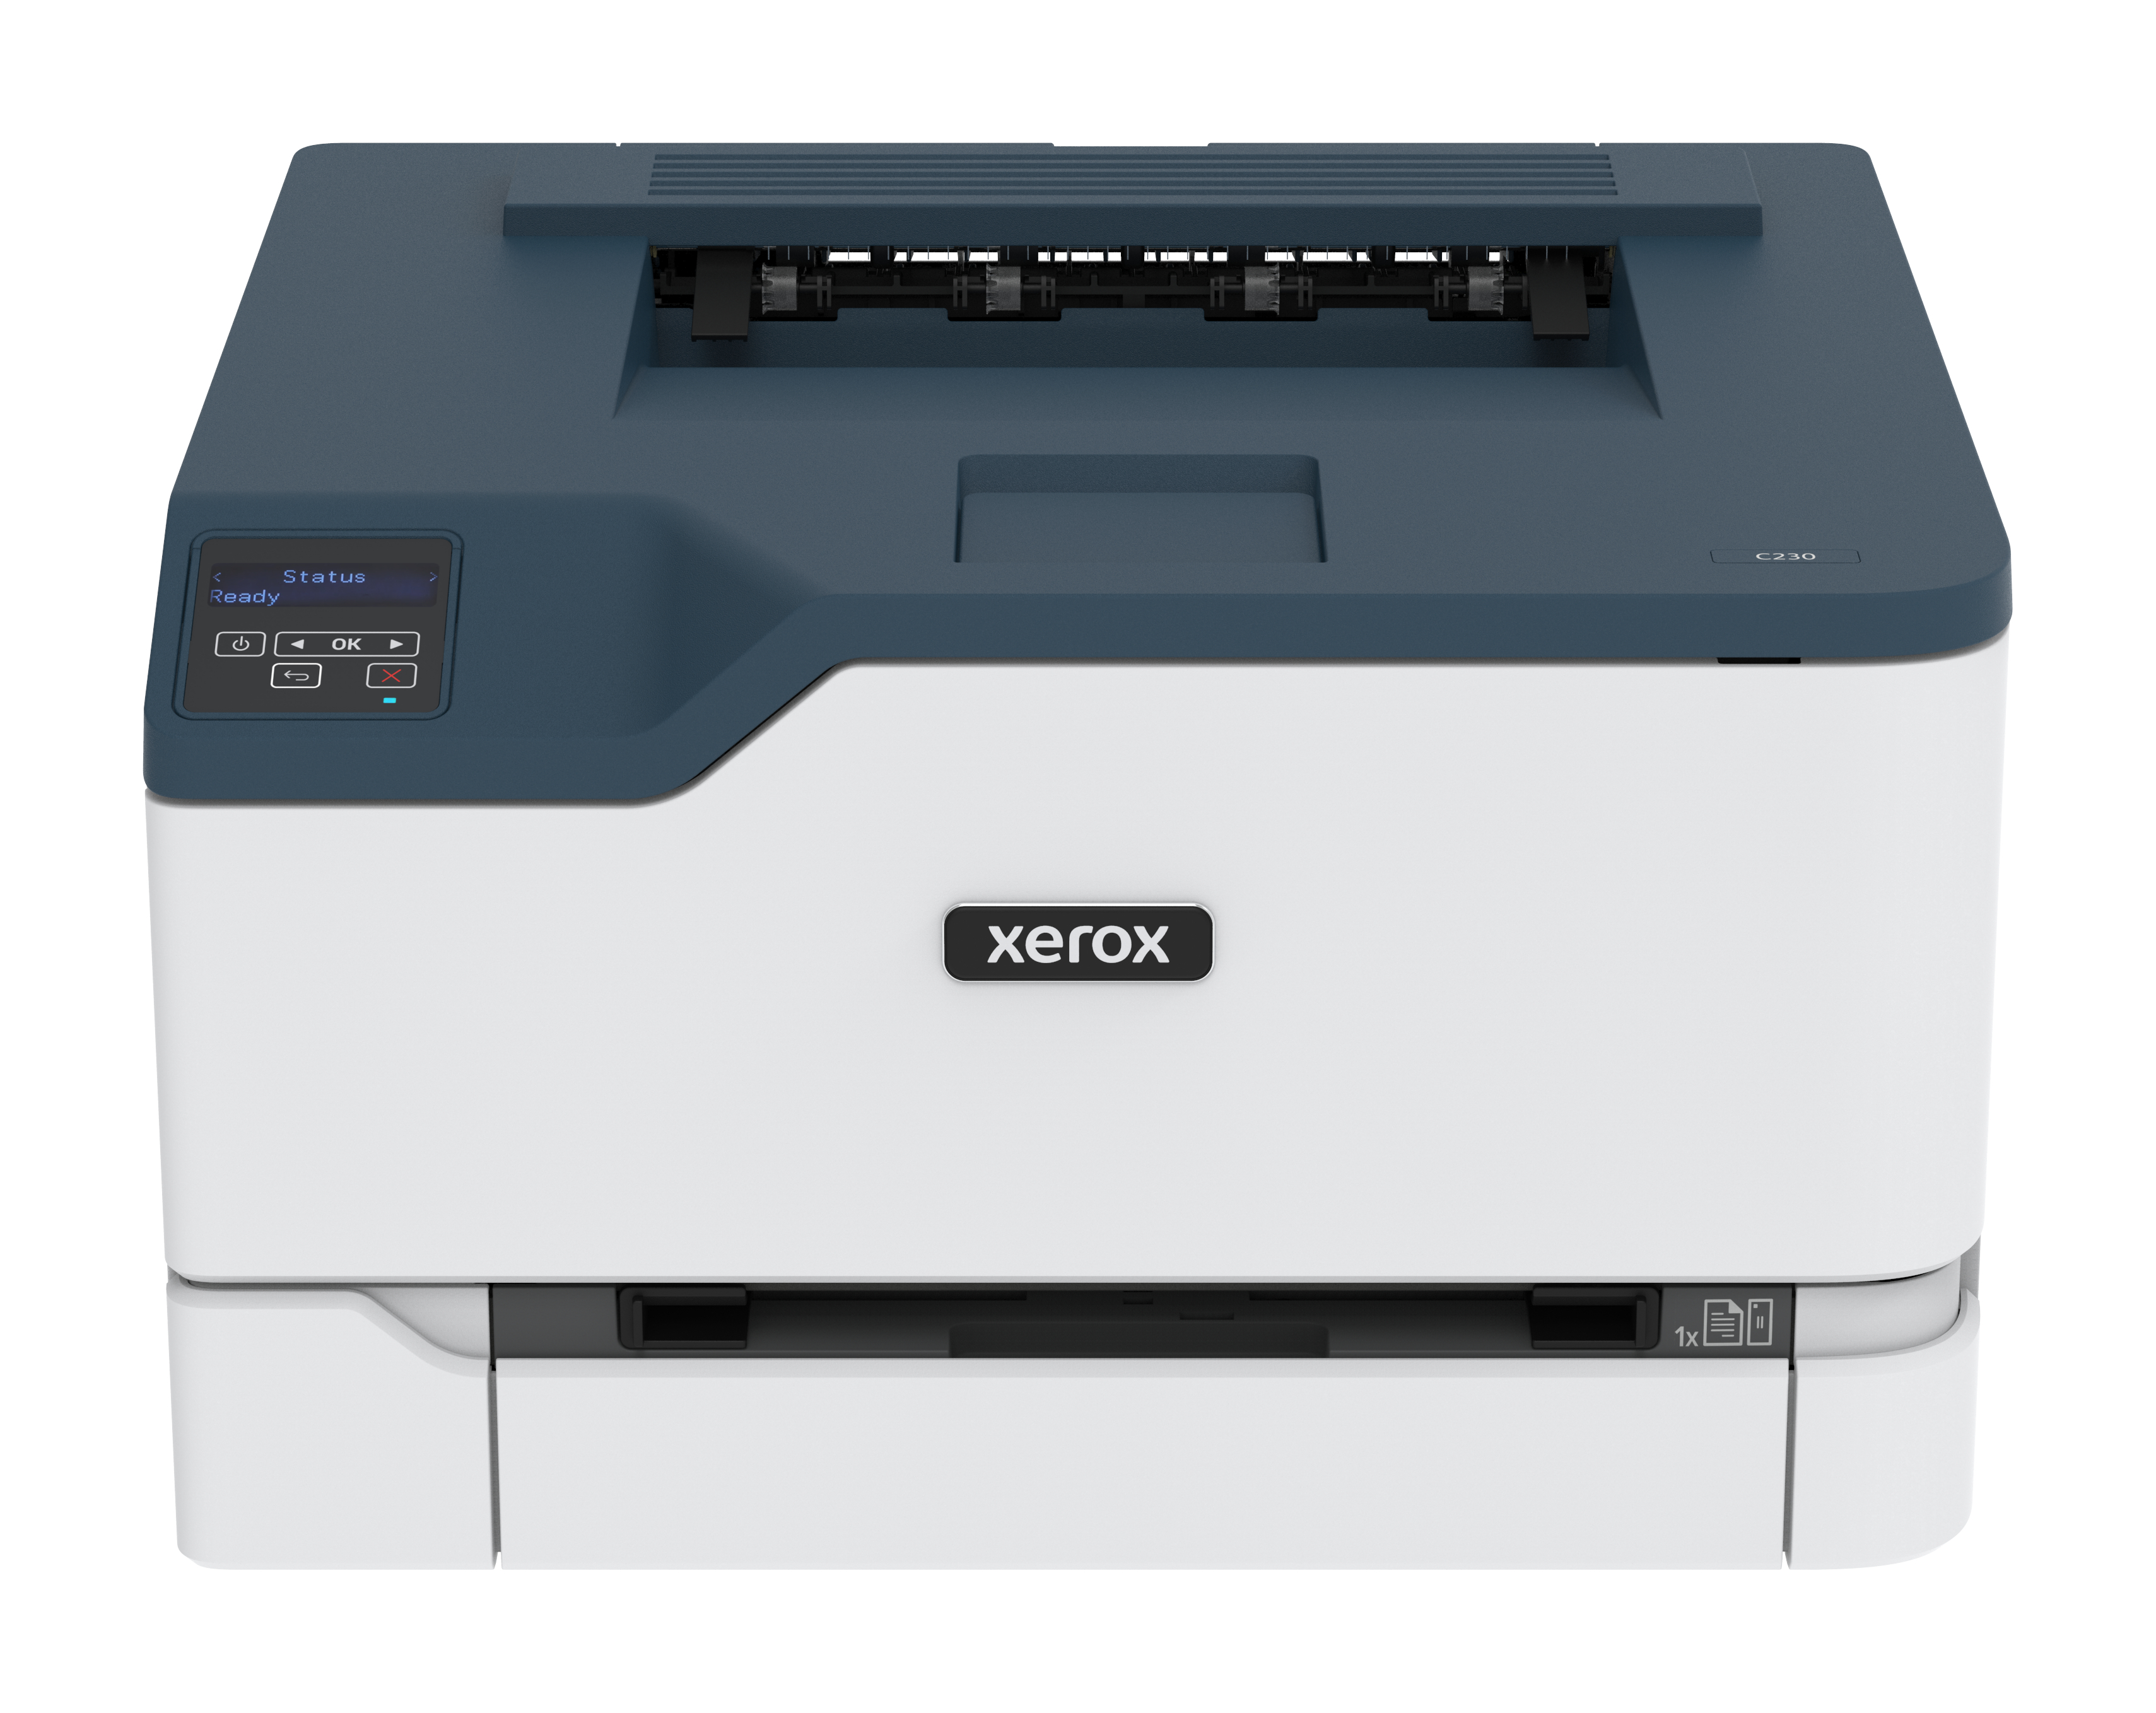 Impresora C230 láser a color - Xerox